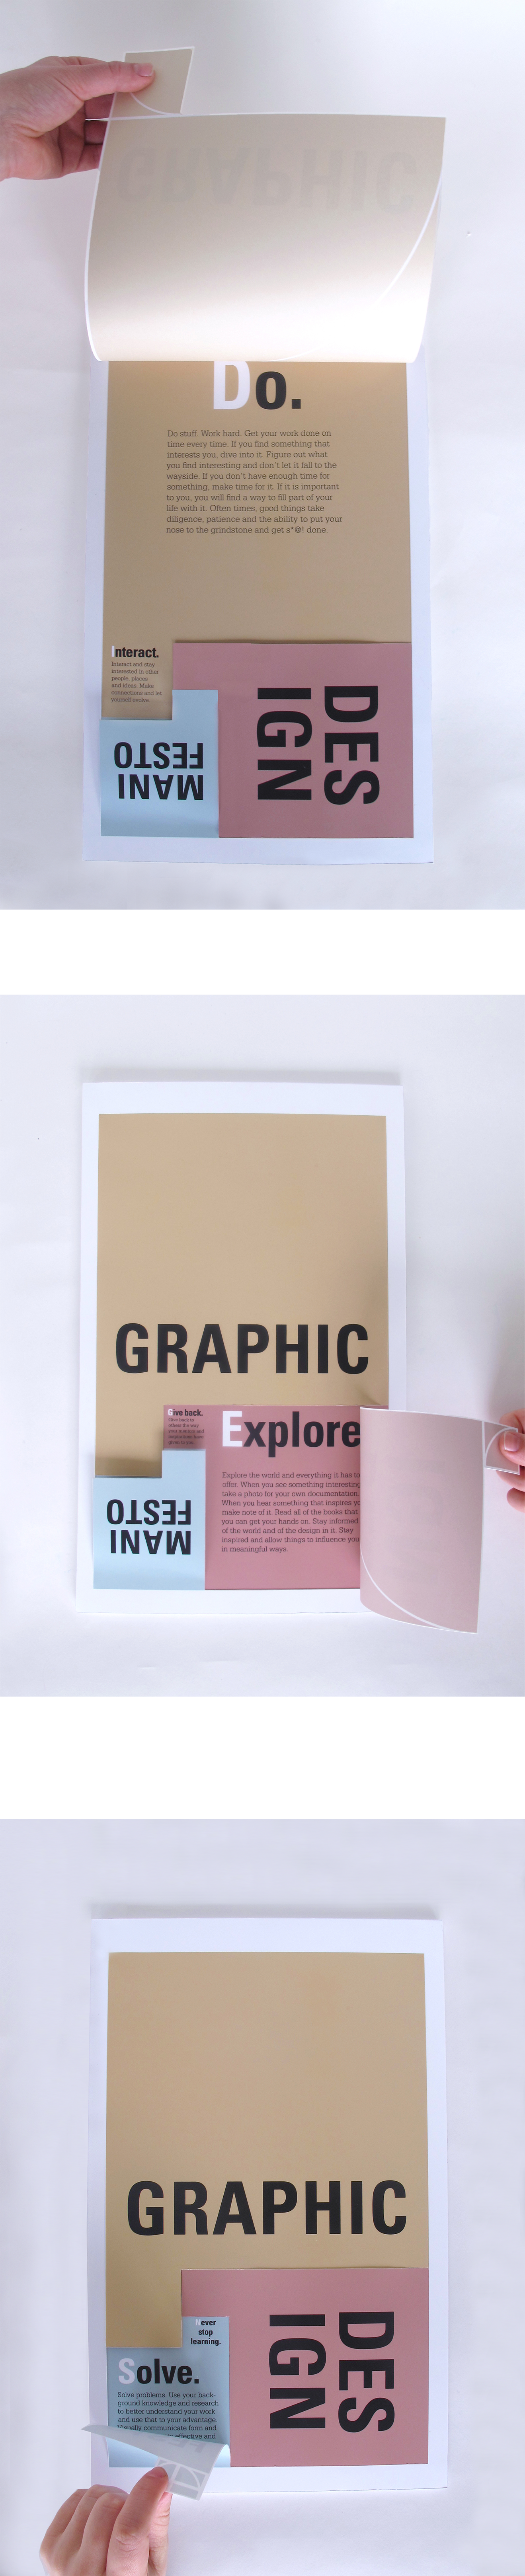 graphic design manifesto